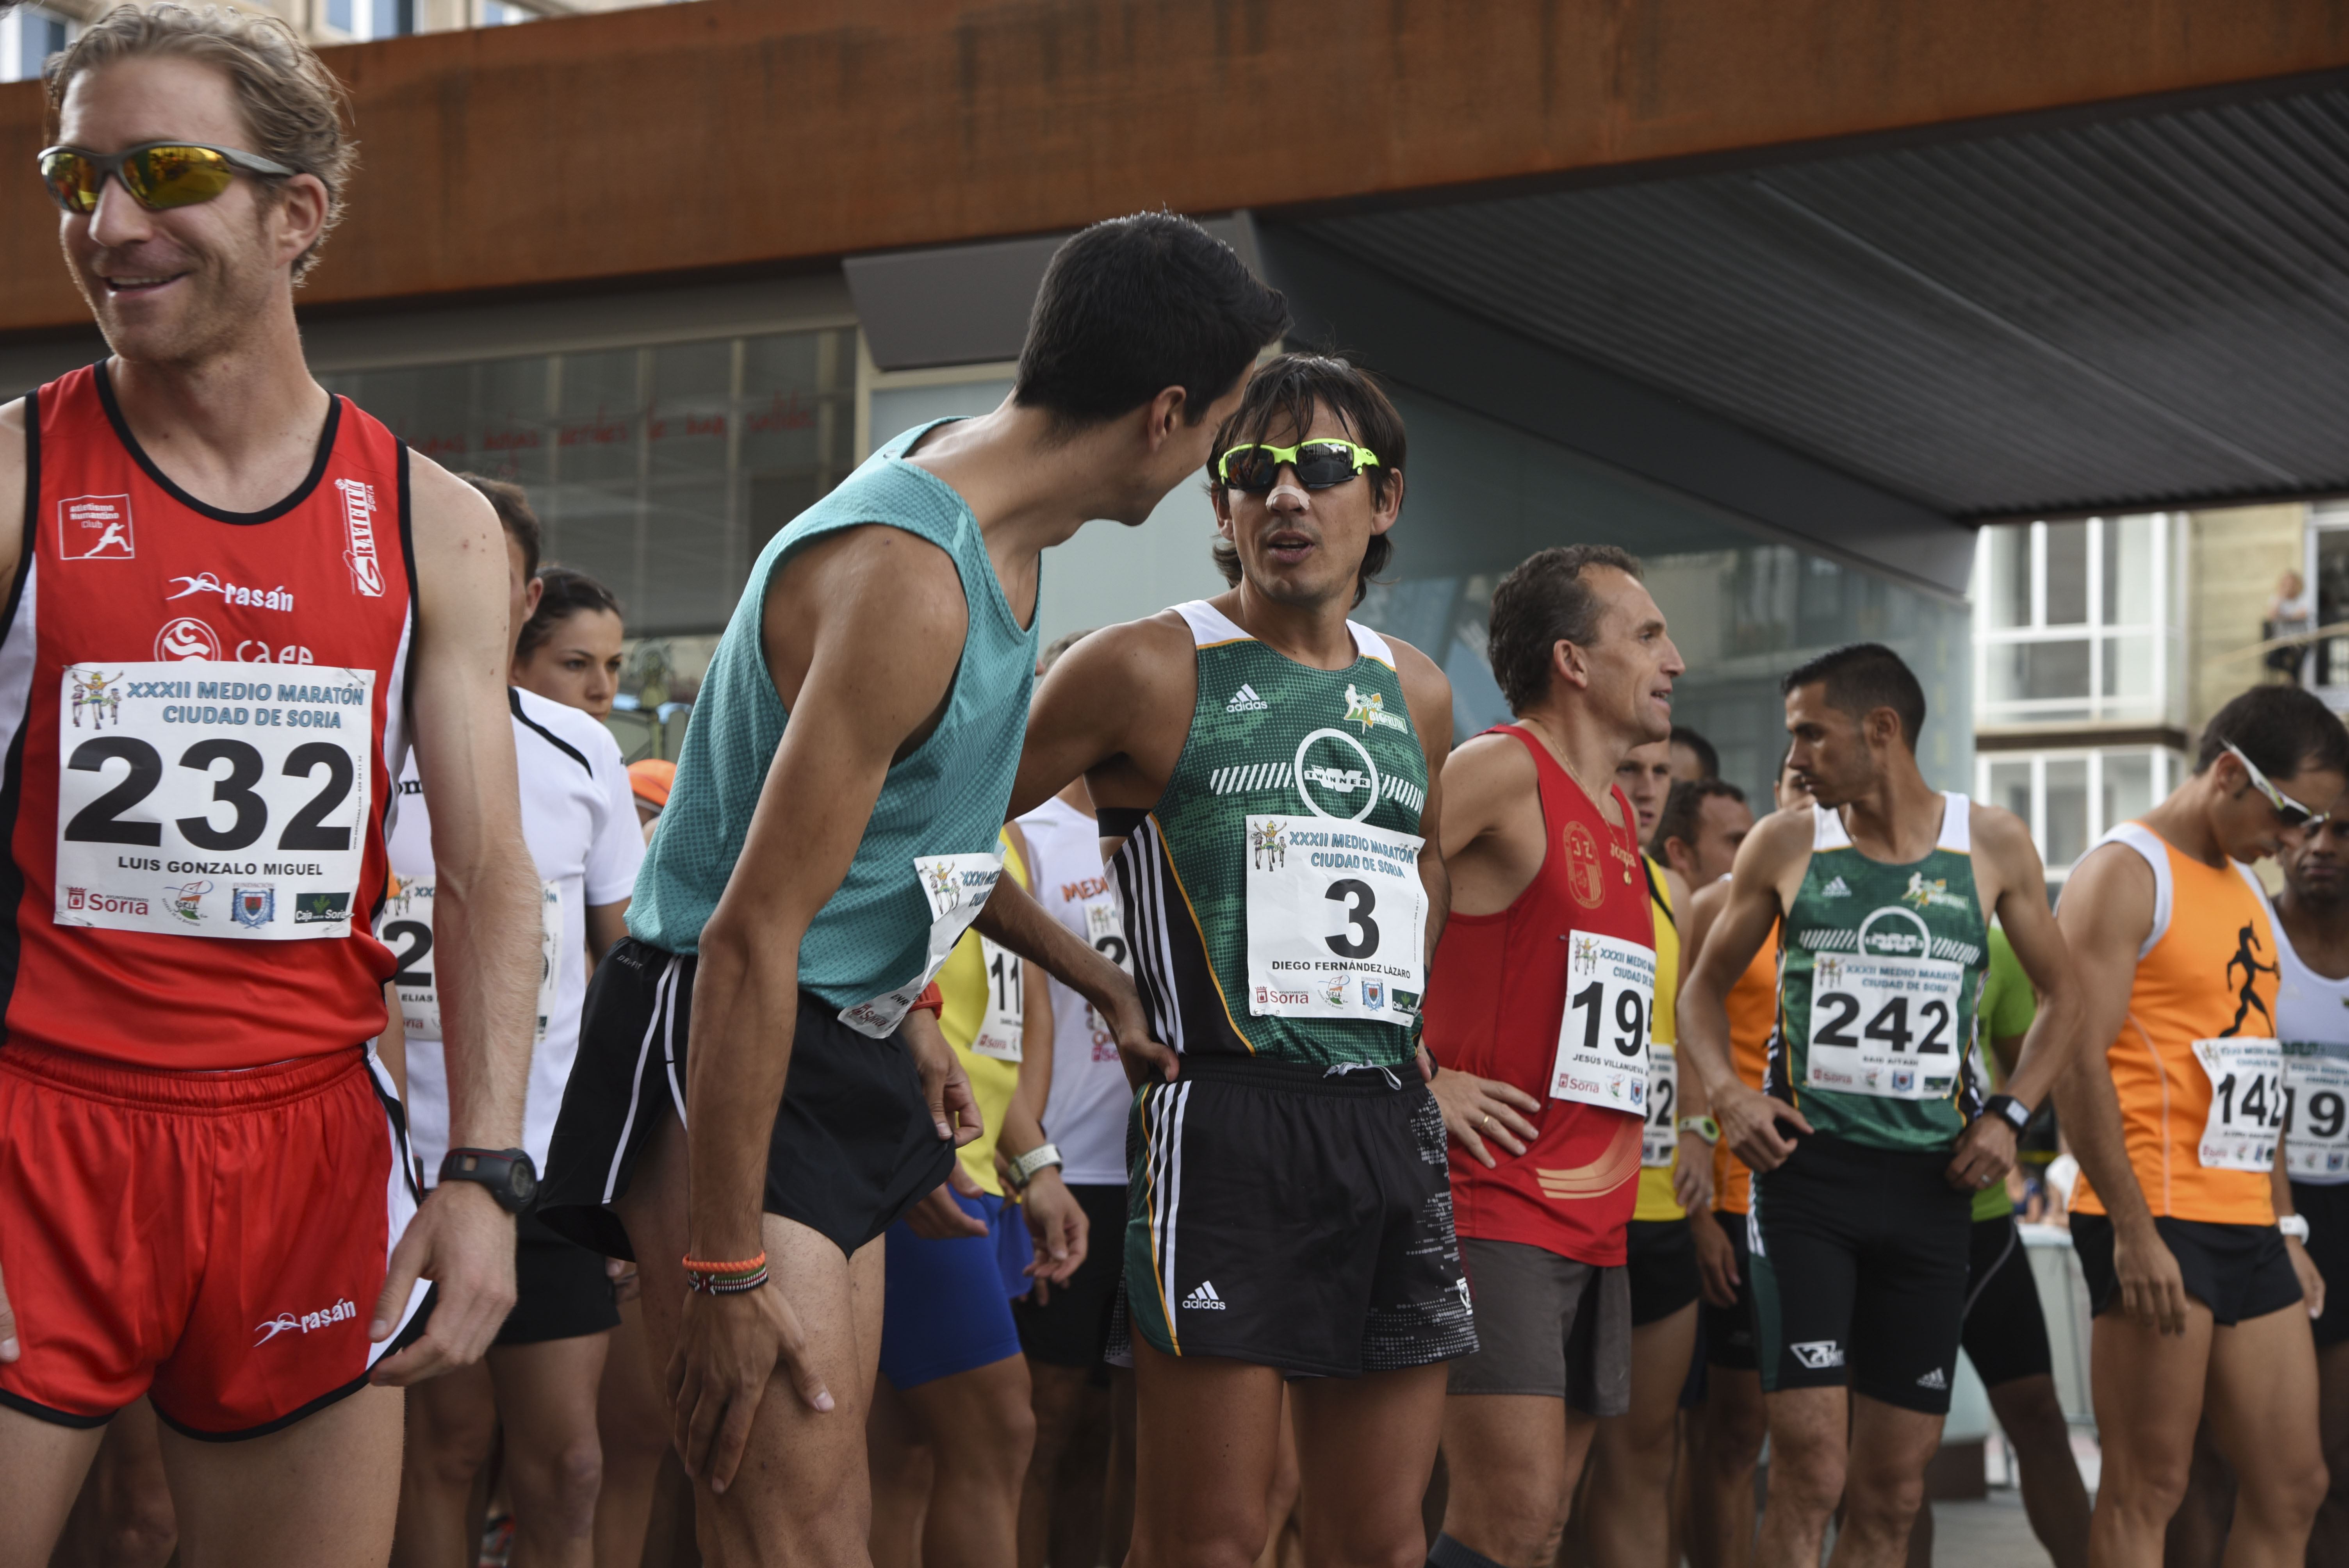 Said Aitadi inscribe su nombre por primera vez en la media maratón de Soria